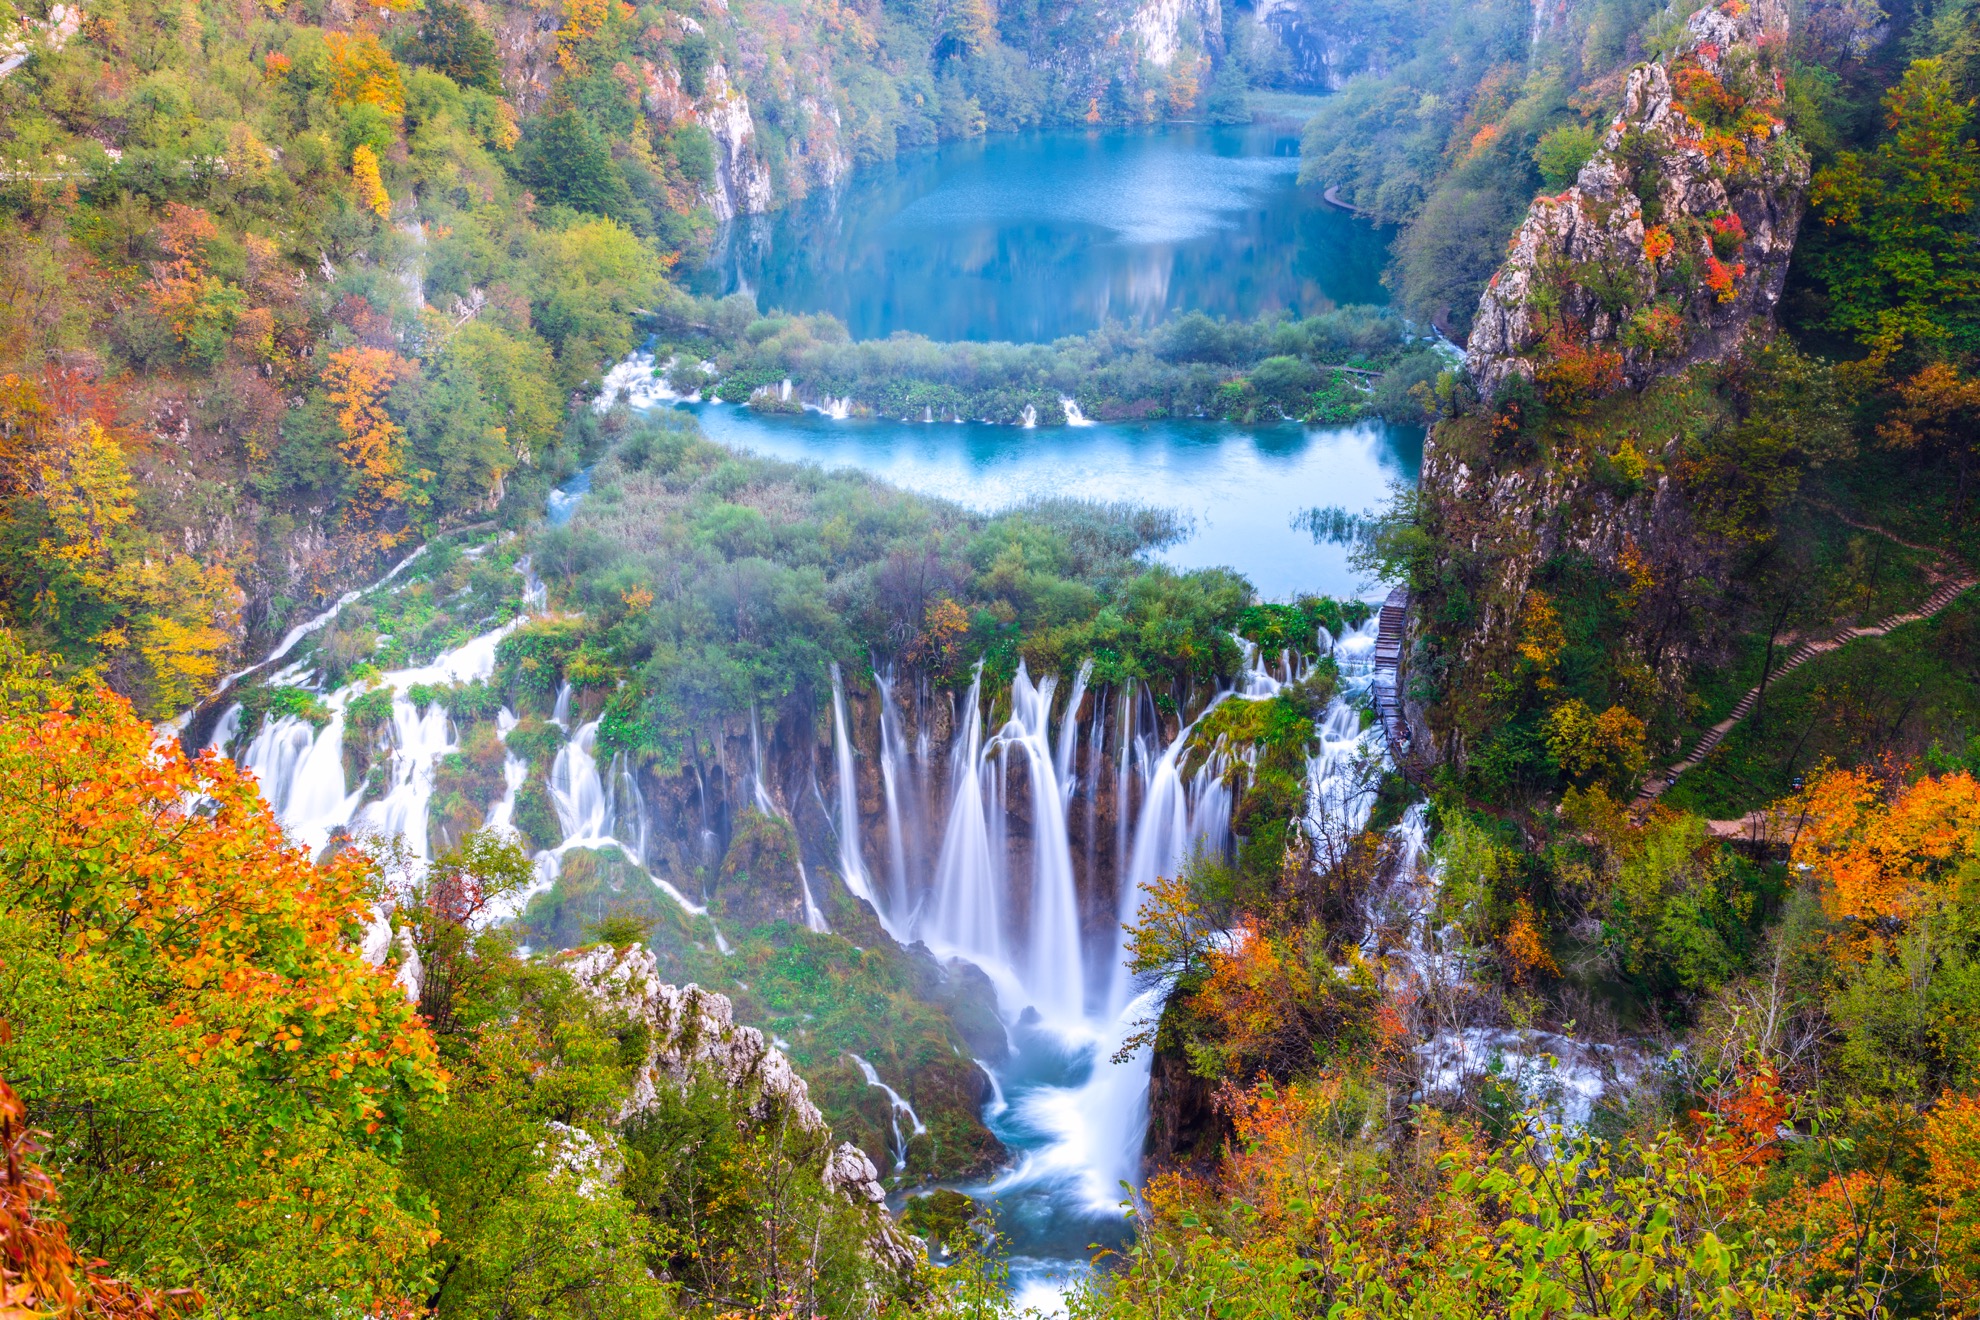 Cascadas se unen a 16 lagos naturales en el impresionante Parque Nacional Plitvice Lakes de Croacia - 3